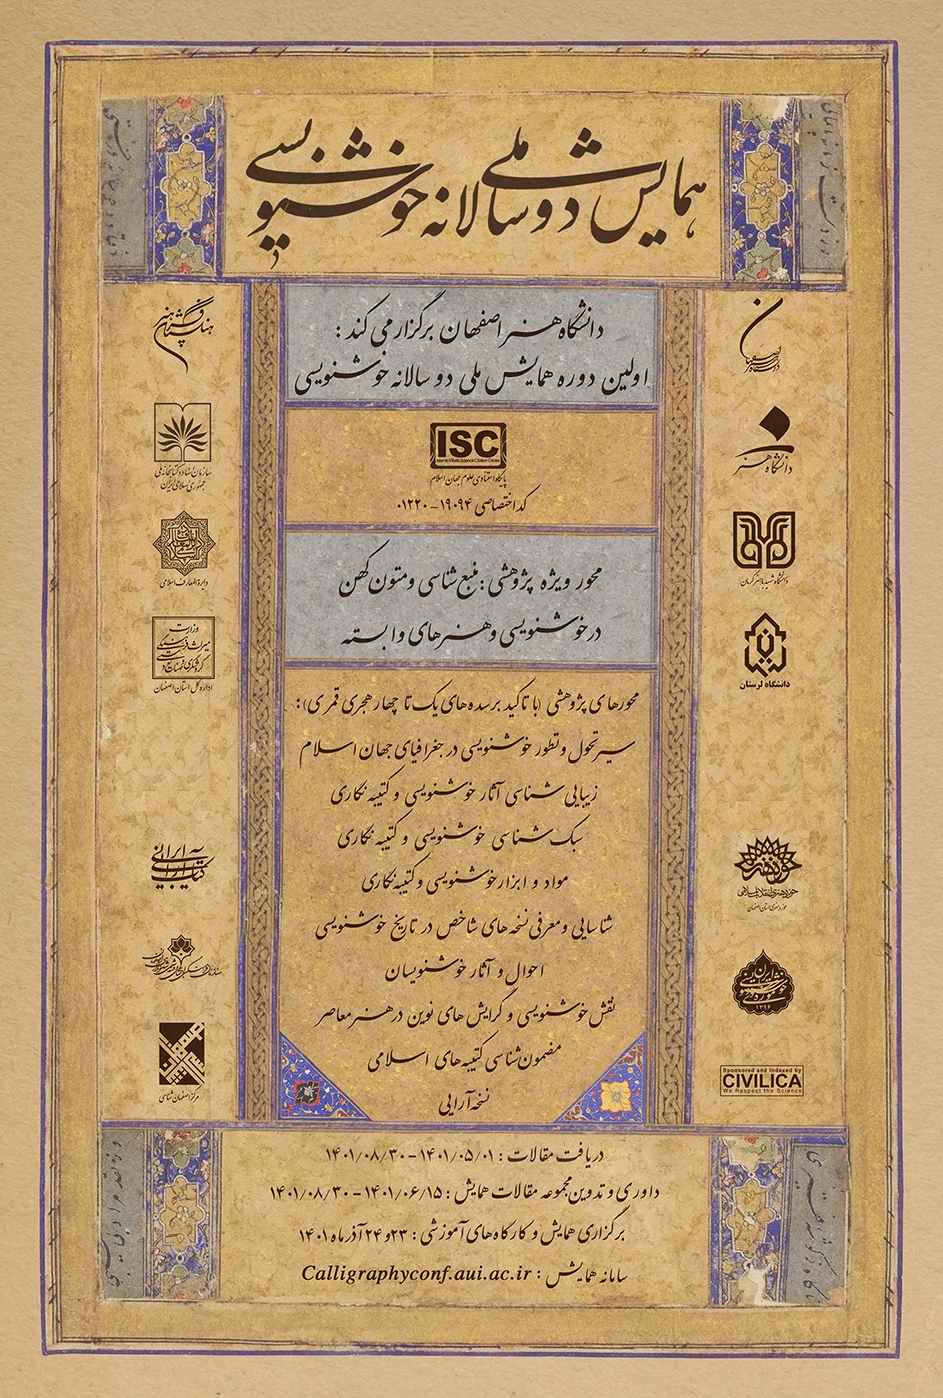 اولین همایش ملی خوشنویسی در دانشگاه هنر اصفهان برگزار می شود